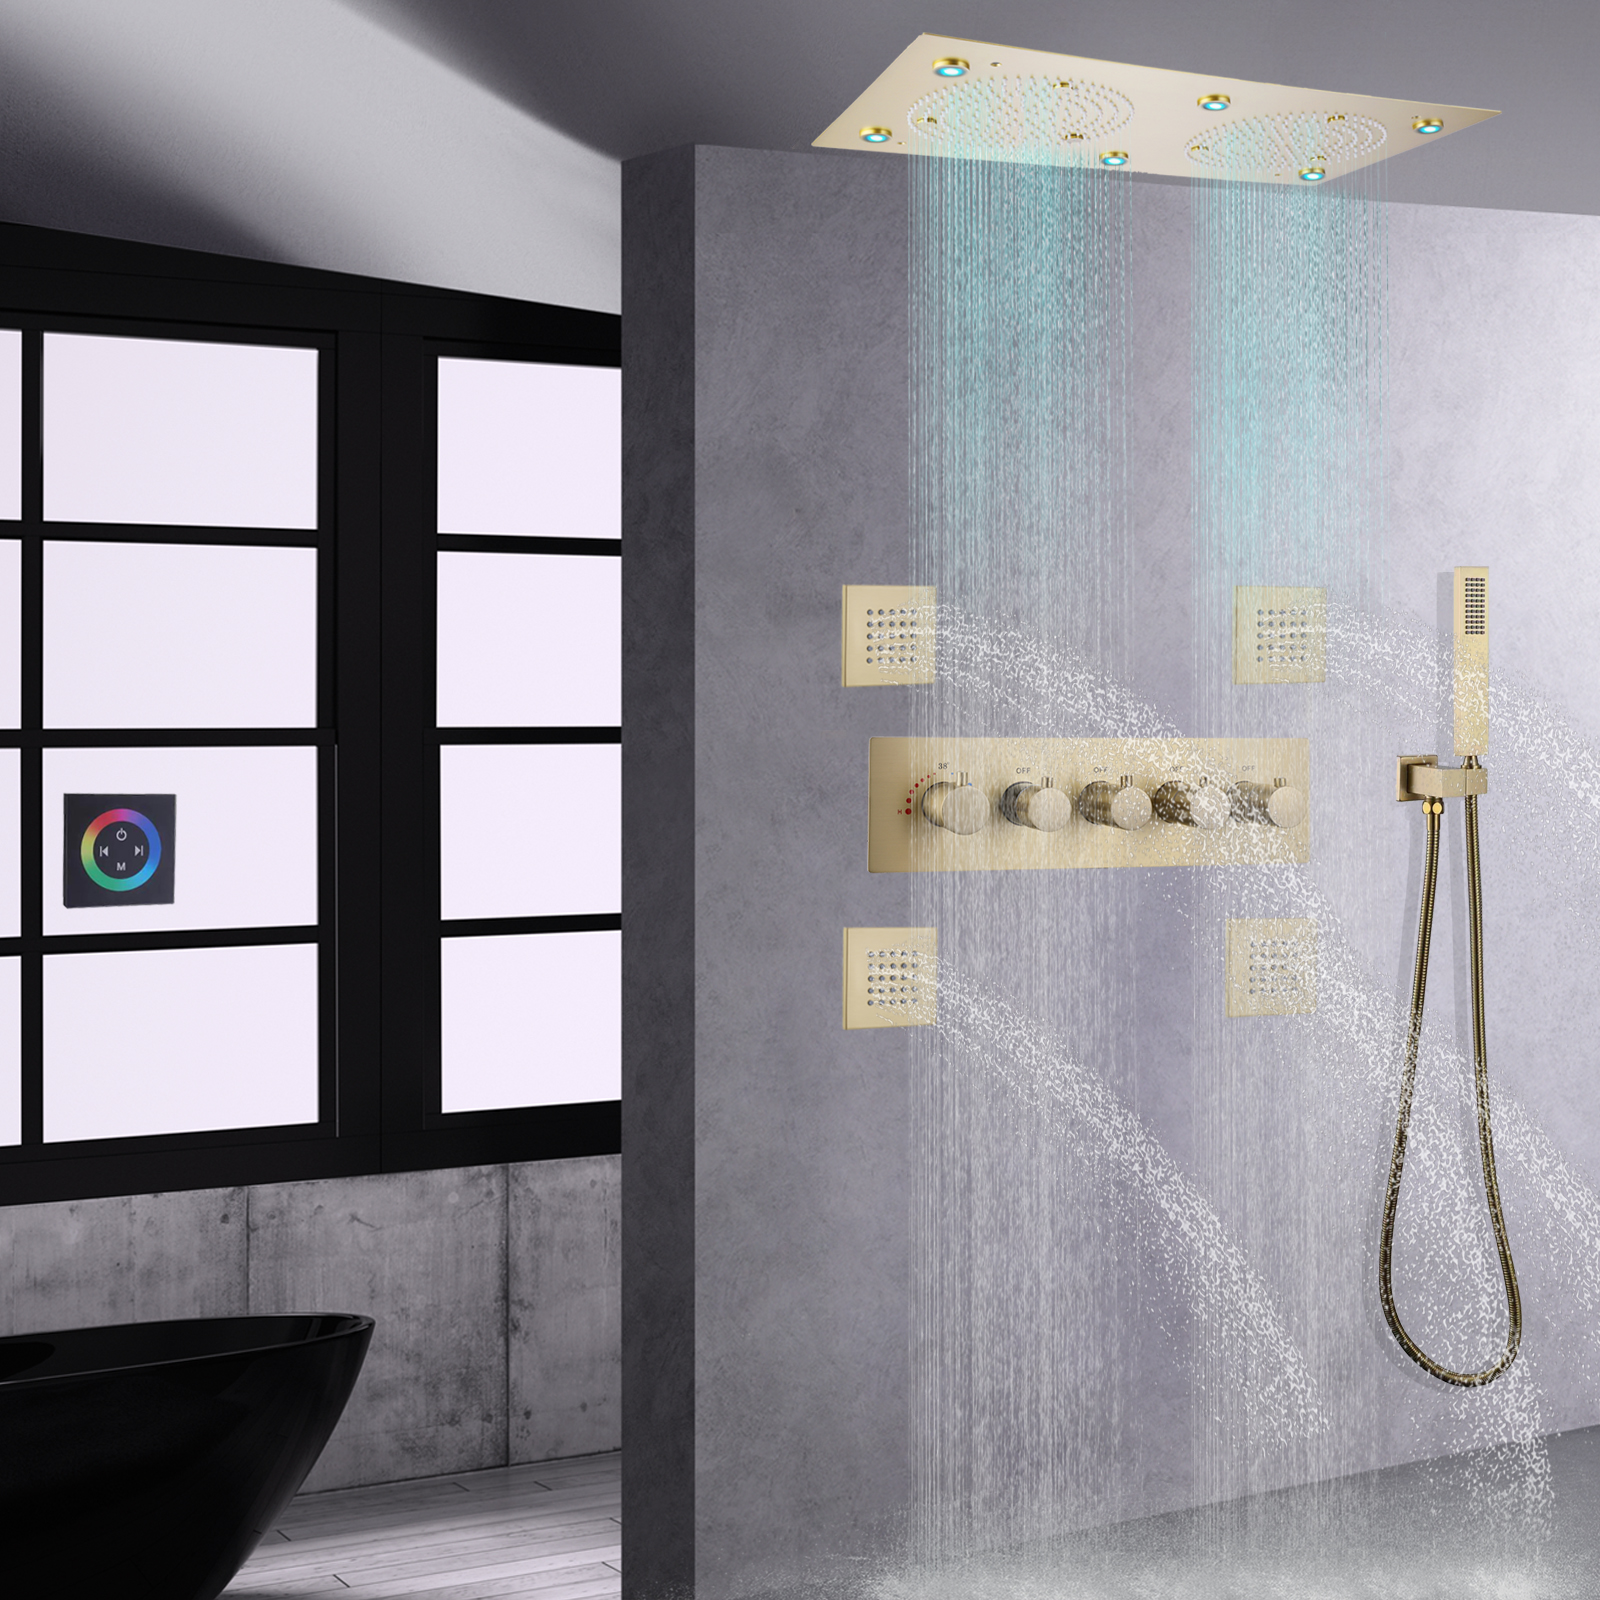 نحى الذهب ثرموستاتي دش رئيس الأمطار LED الحمام حمام دش صنبور مجموعة مع خرطوم المحمولة